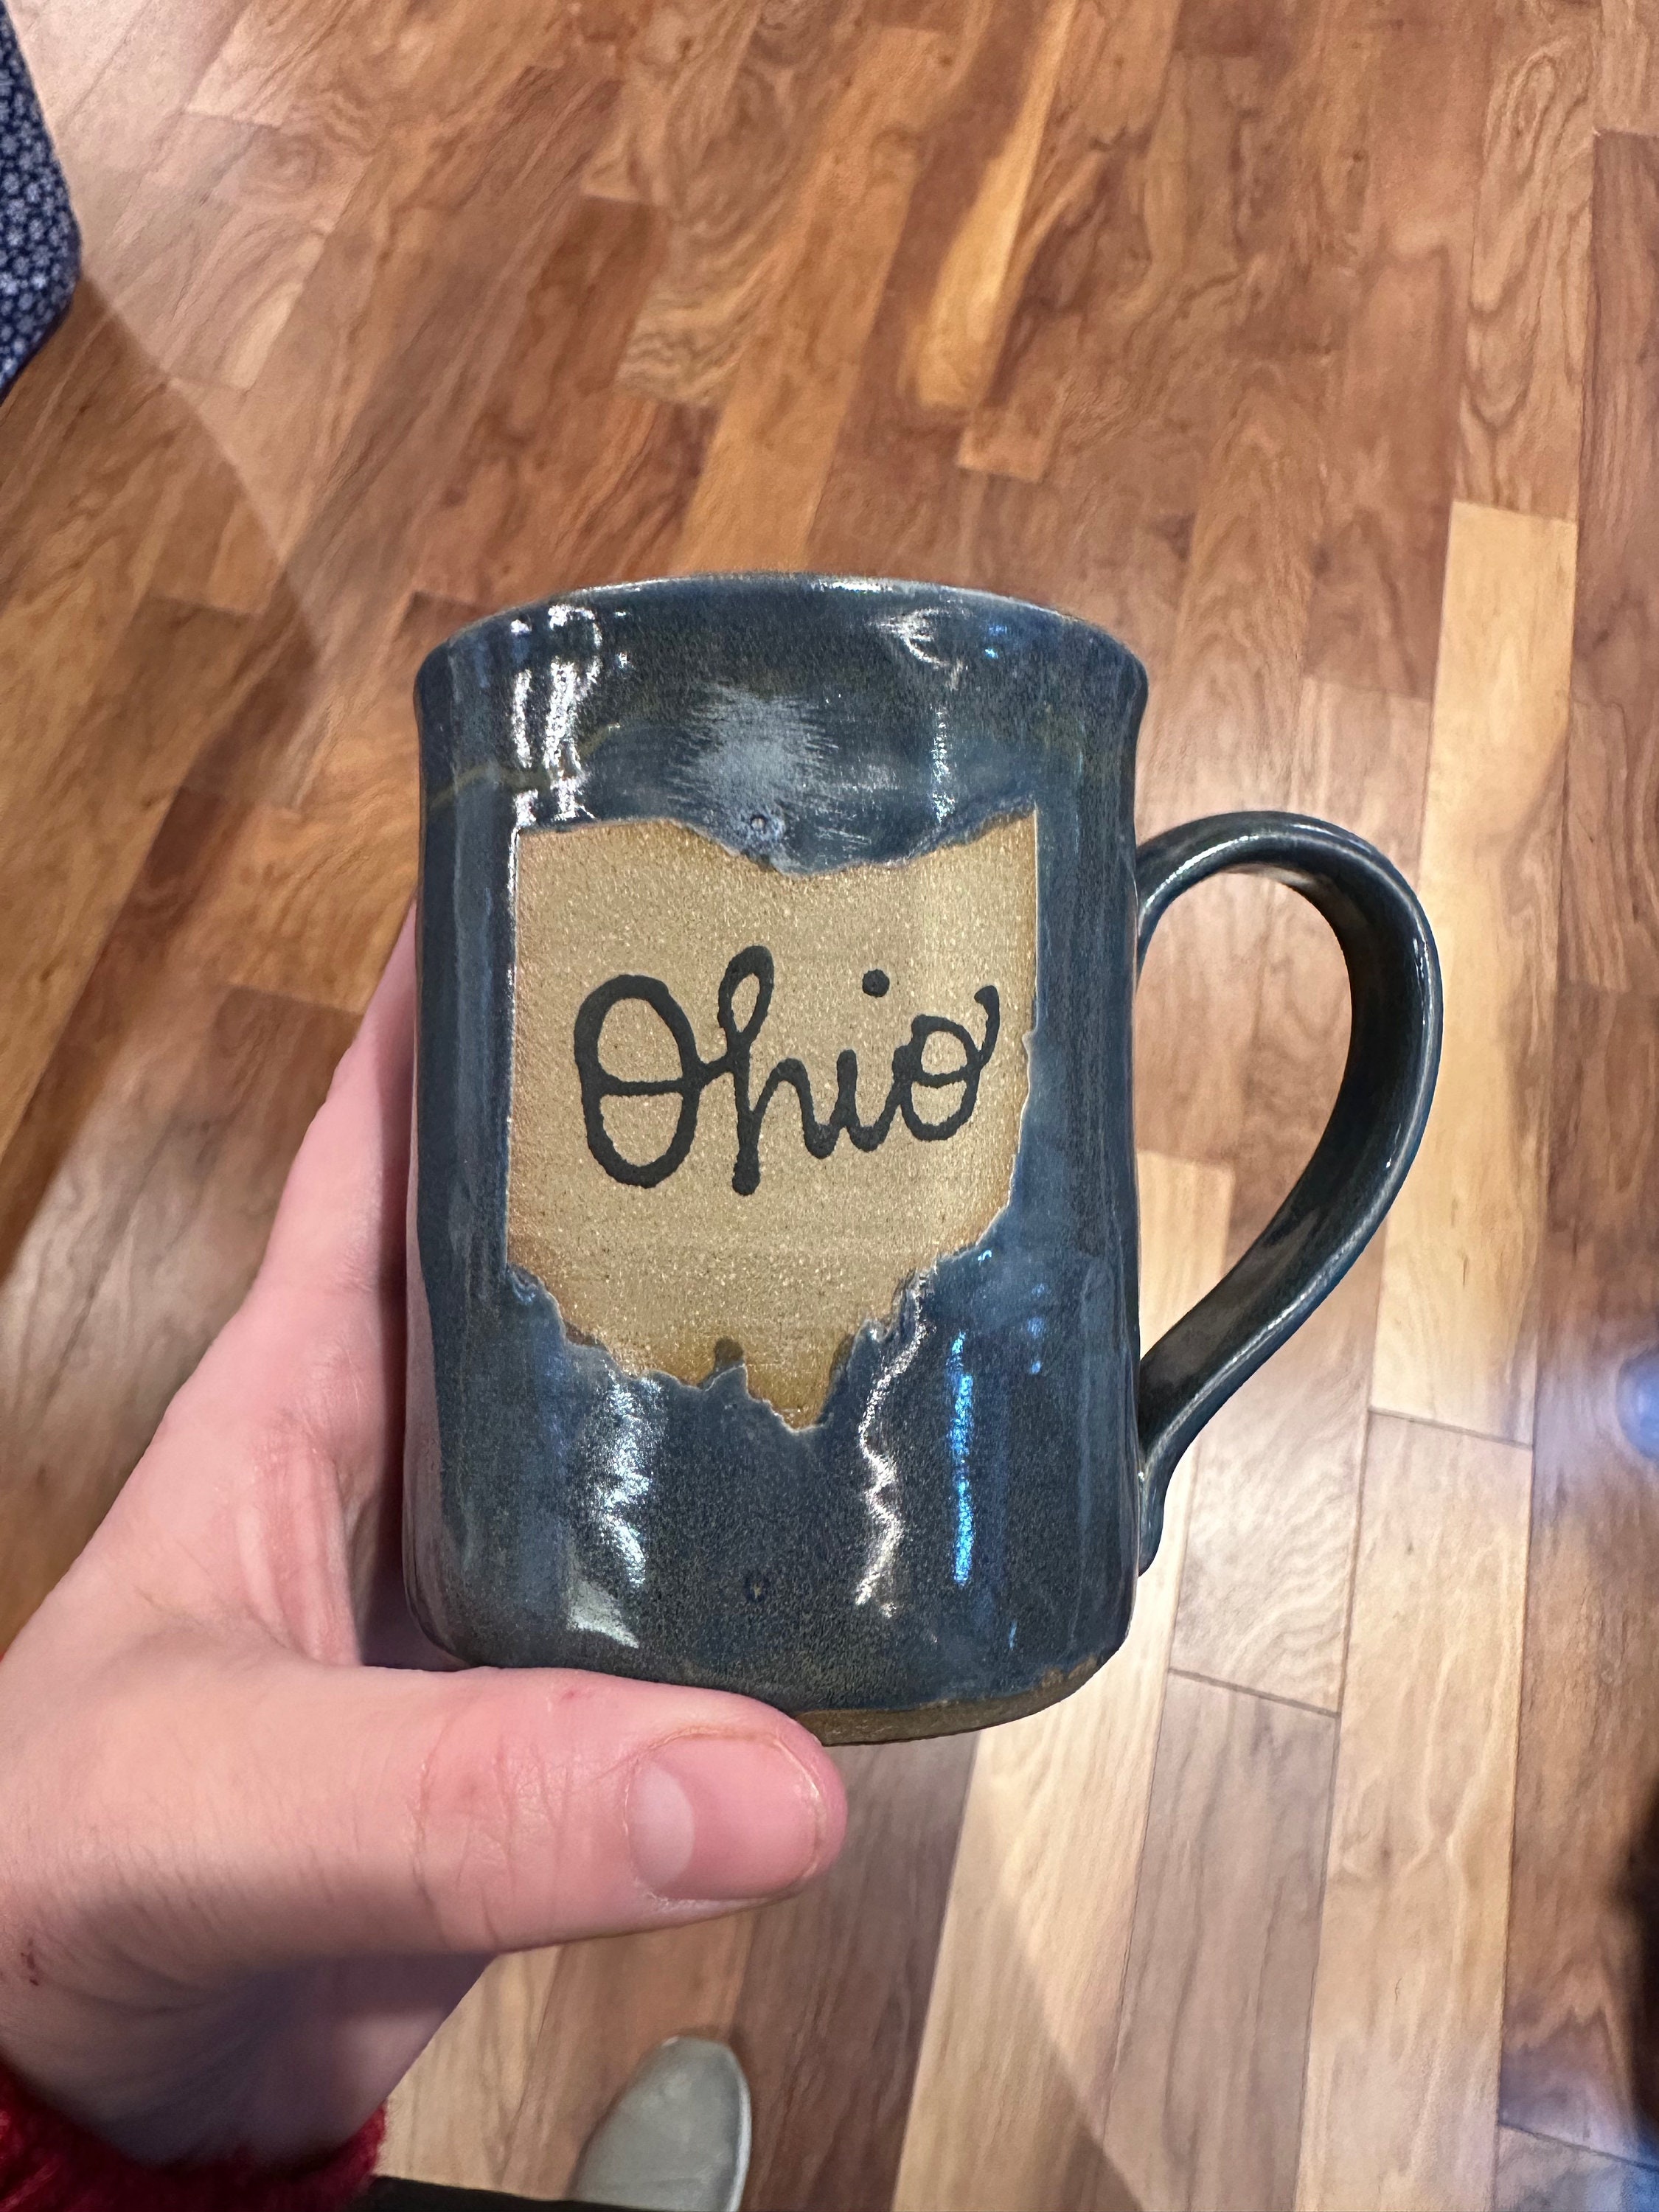 Black Ohio State Buckeyes 11oz. Personalized Mug - Yahoo Shopping